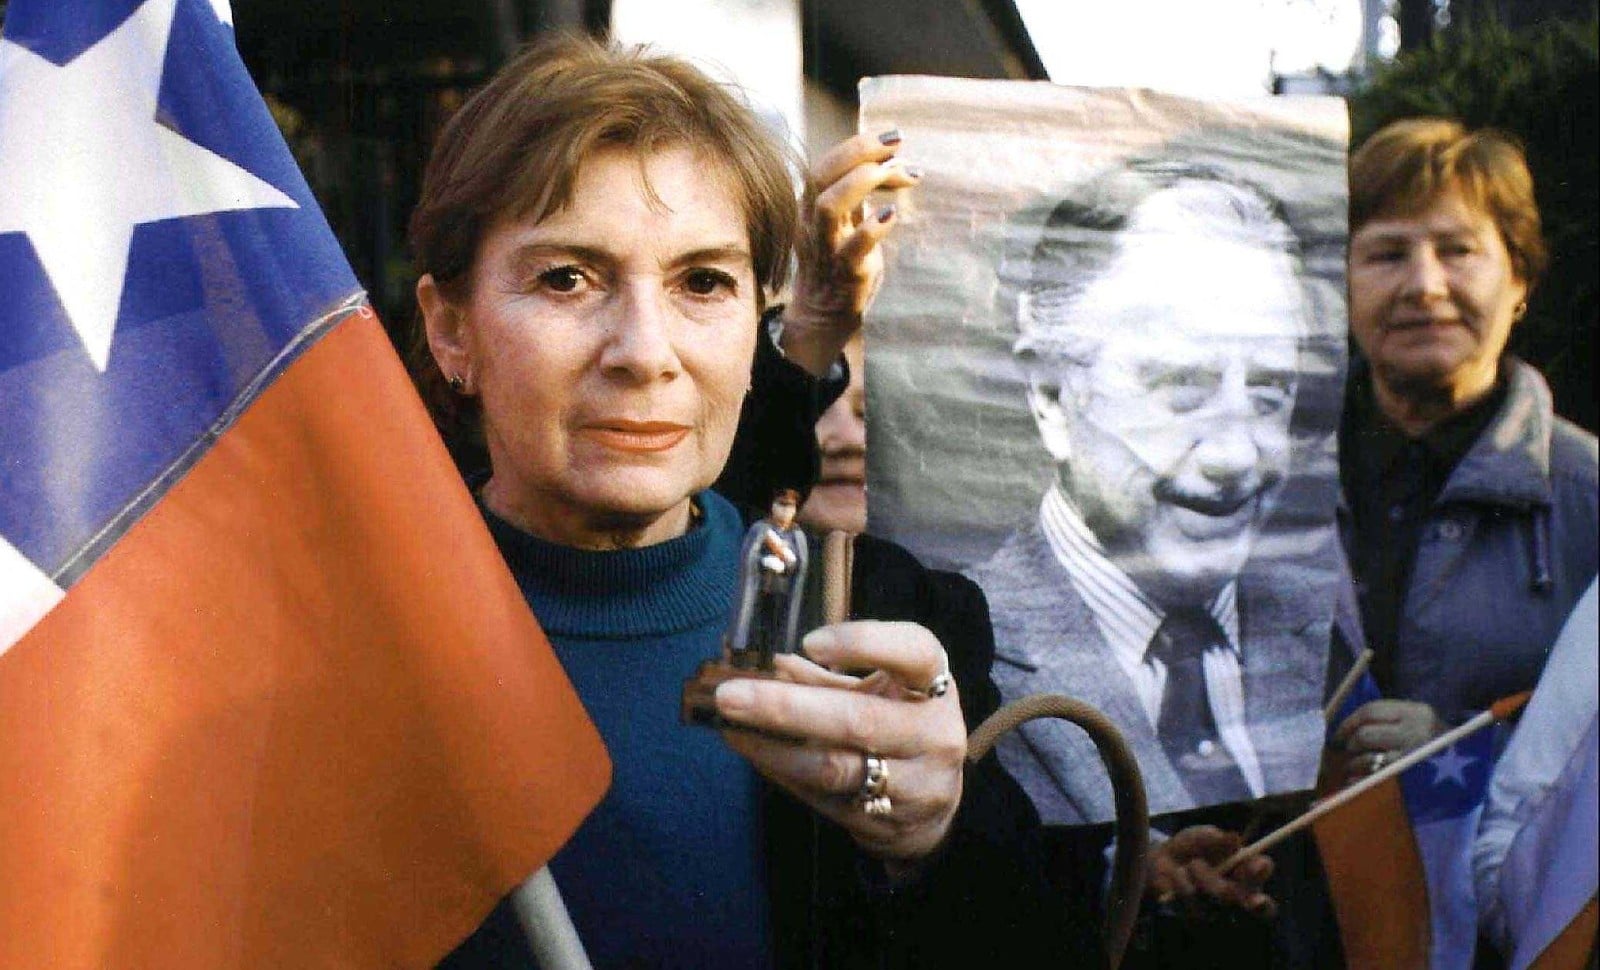 Manifestation en soutien à Pinochet en 2000 © ARIAS FRANCISCO/SIPA Numéro de reportage  : 00404403_000001